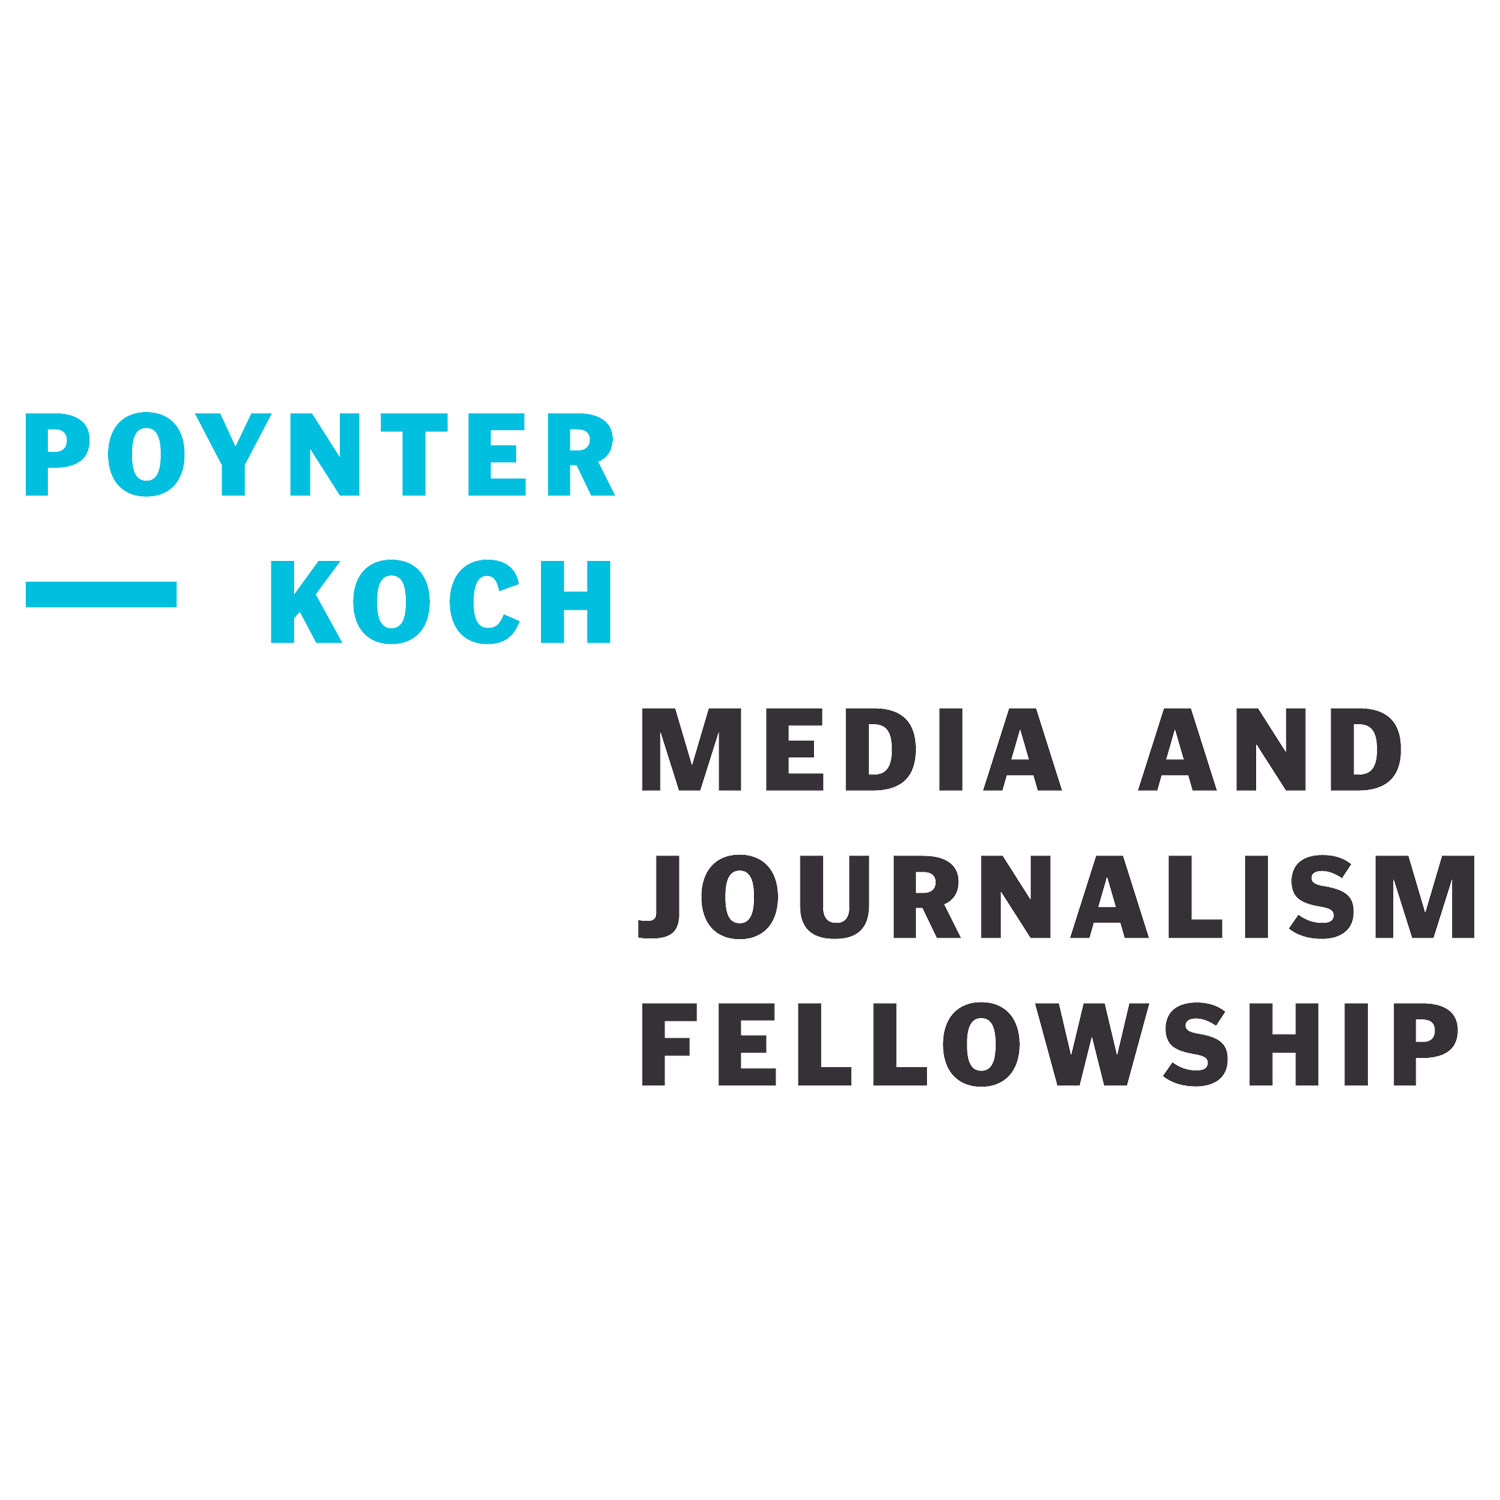 The Poynter-Koch Journalism Fellowship Institute